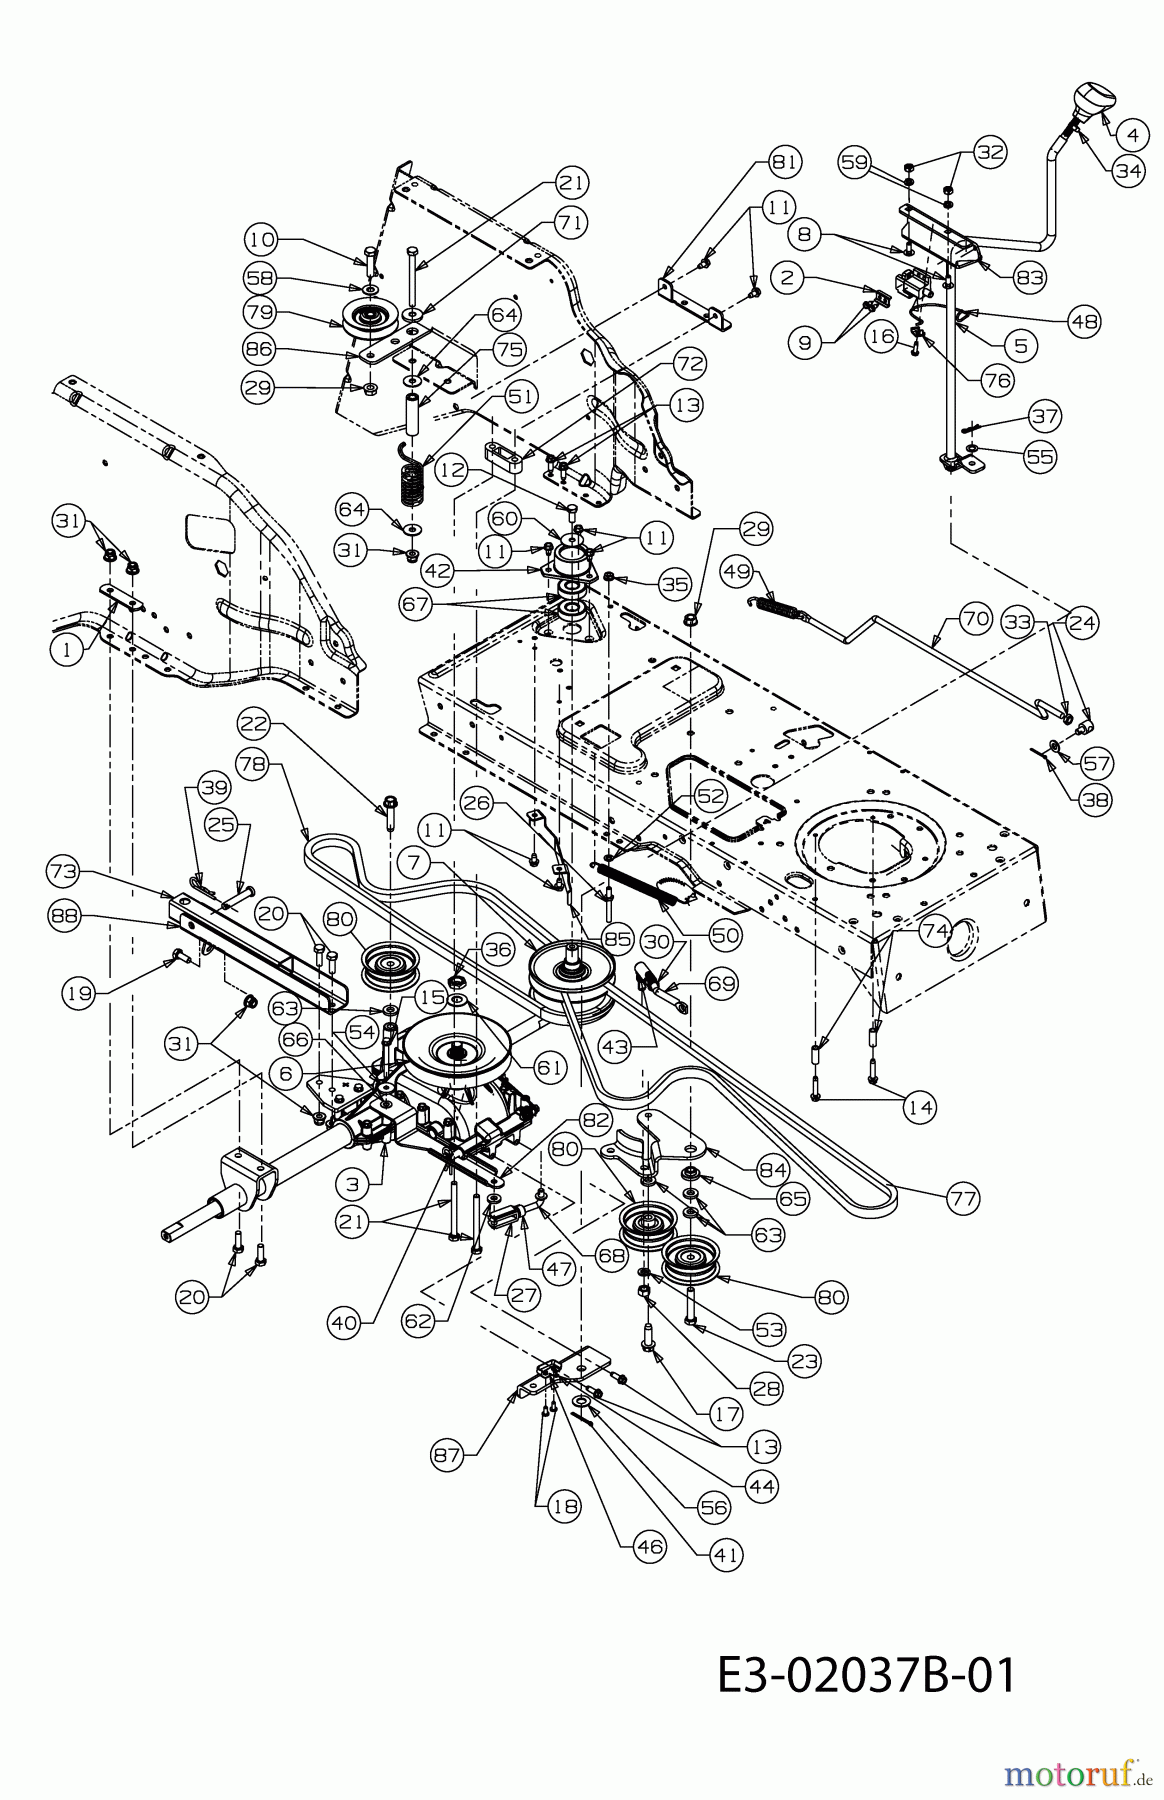  Raiffeisen Rasentraktoren RMH 514-92 A 13CH507E628  (2005) Fahrantrieb